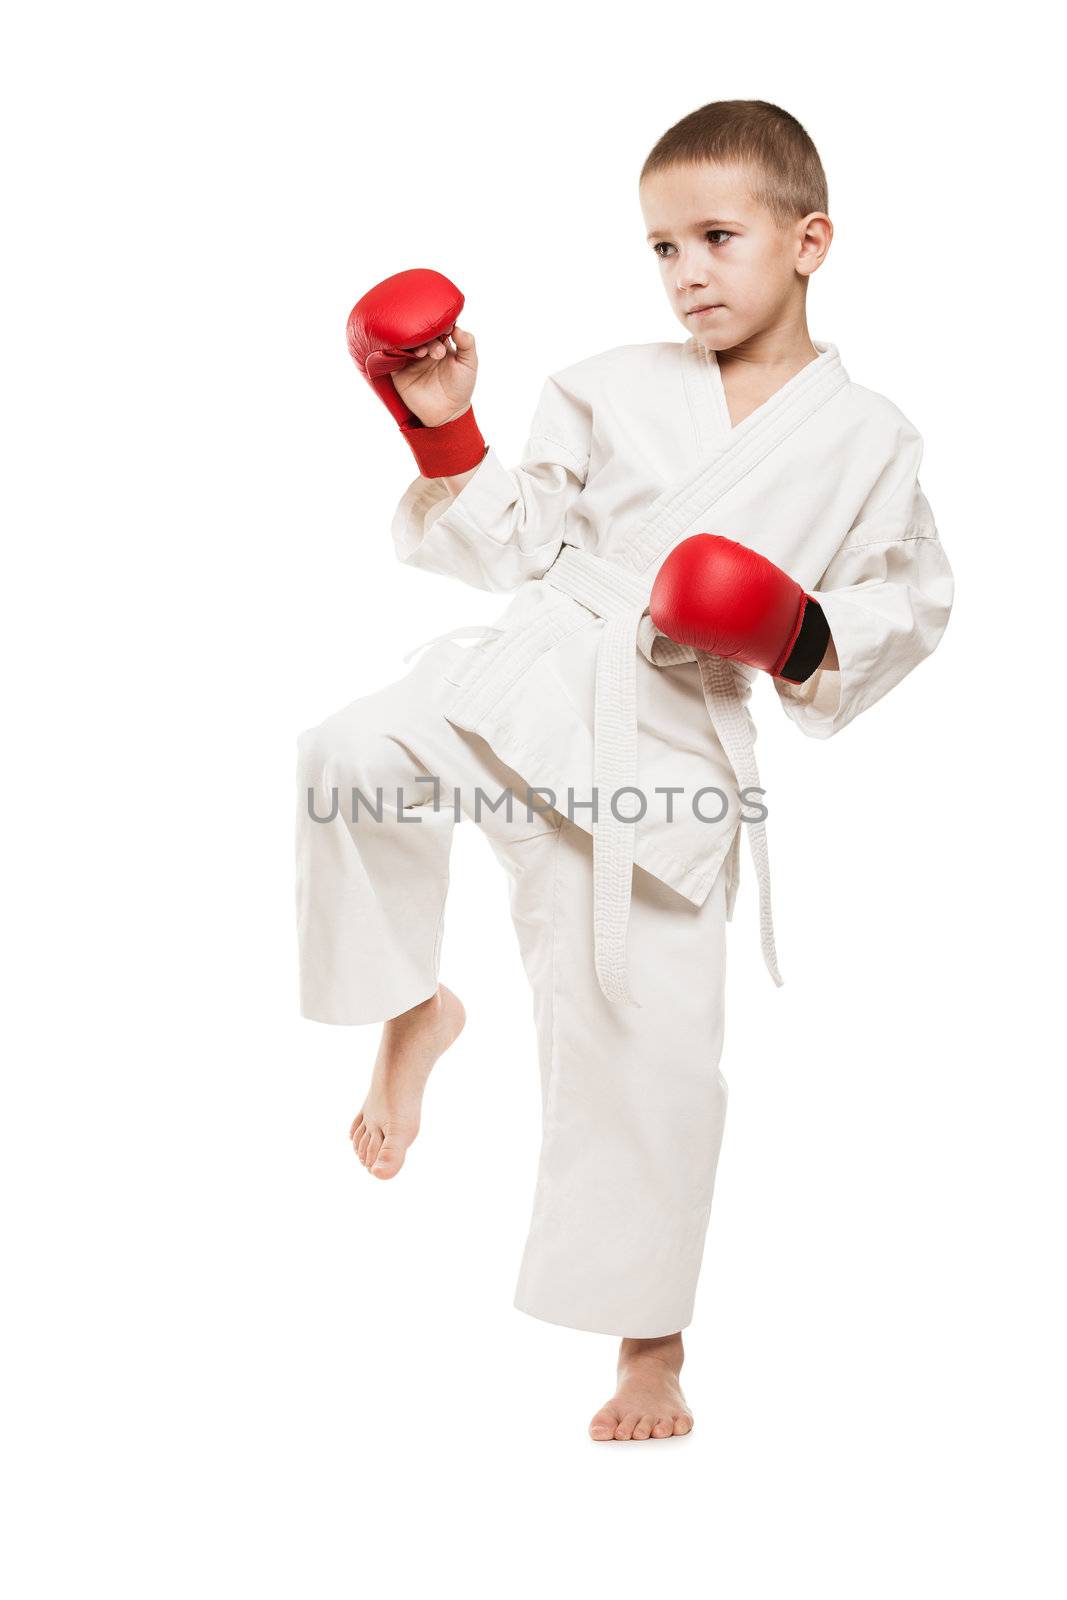 Child boy in kimono training karate by ia_64